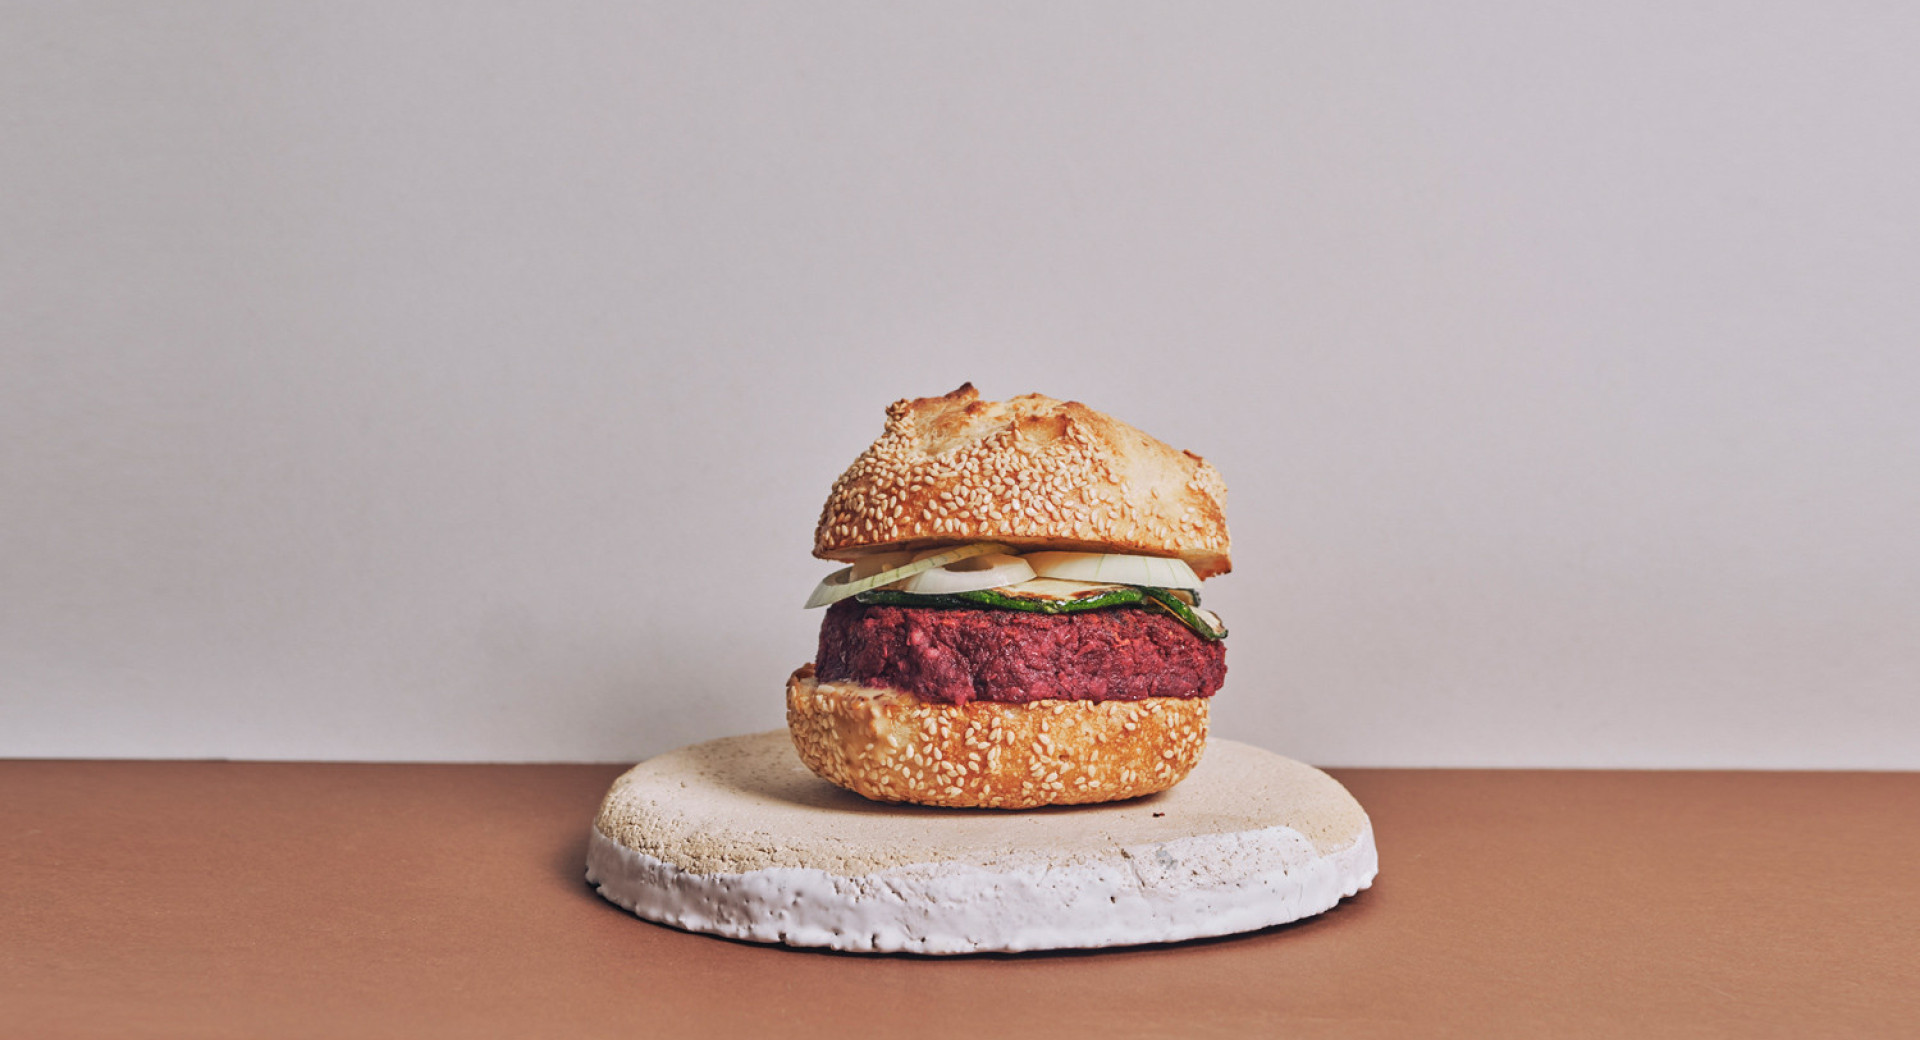 kamnit kroznik na rjavi mizi, belo ozadje. na krozniku predstavljen domac burger, z debelim zrezkom in zelenjavo med rezinama zemljice. 